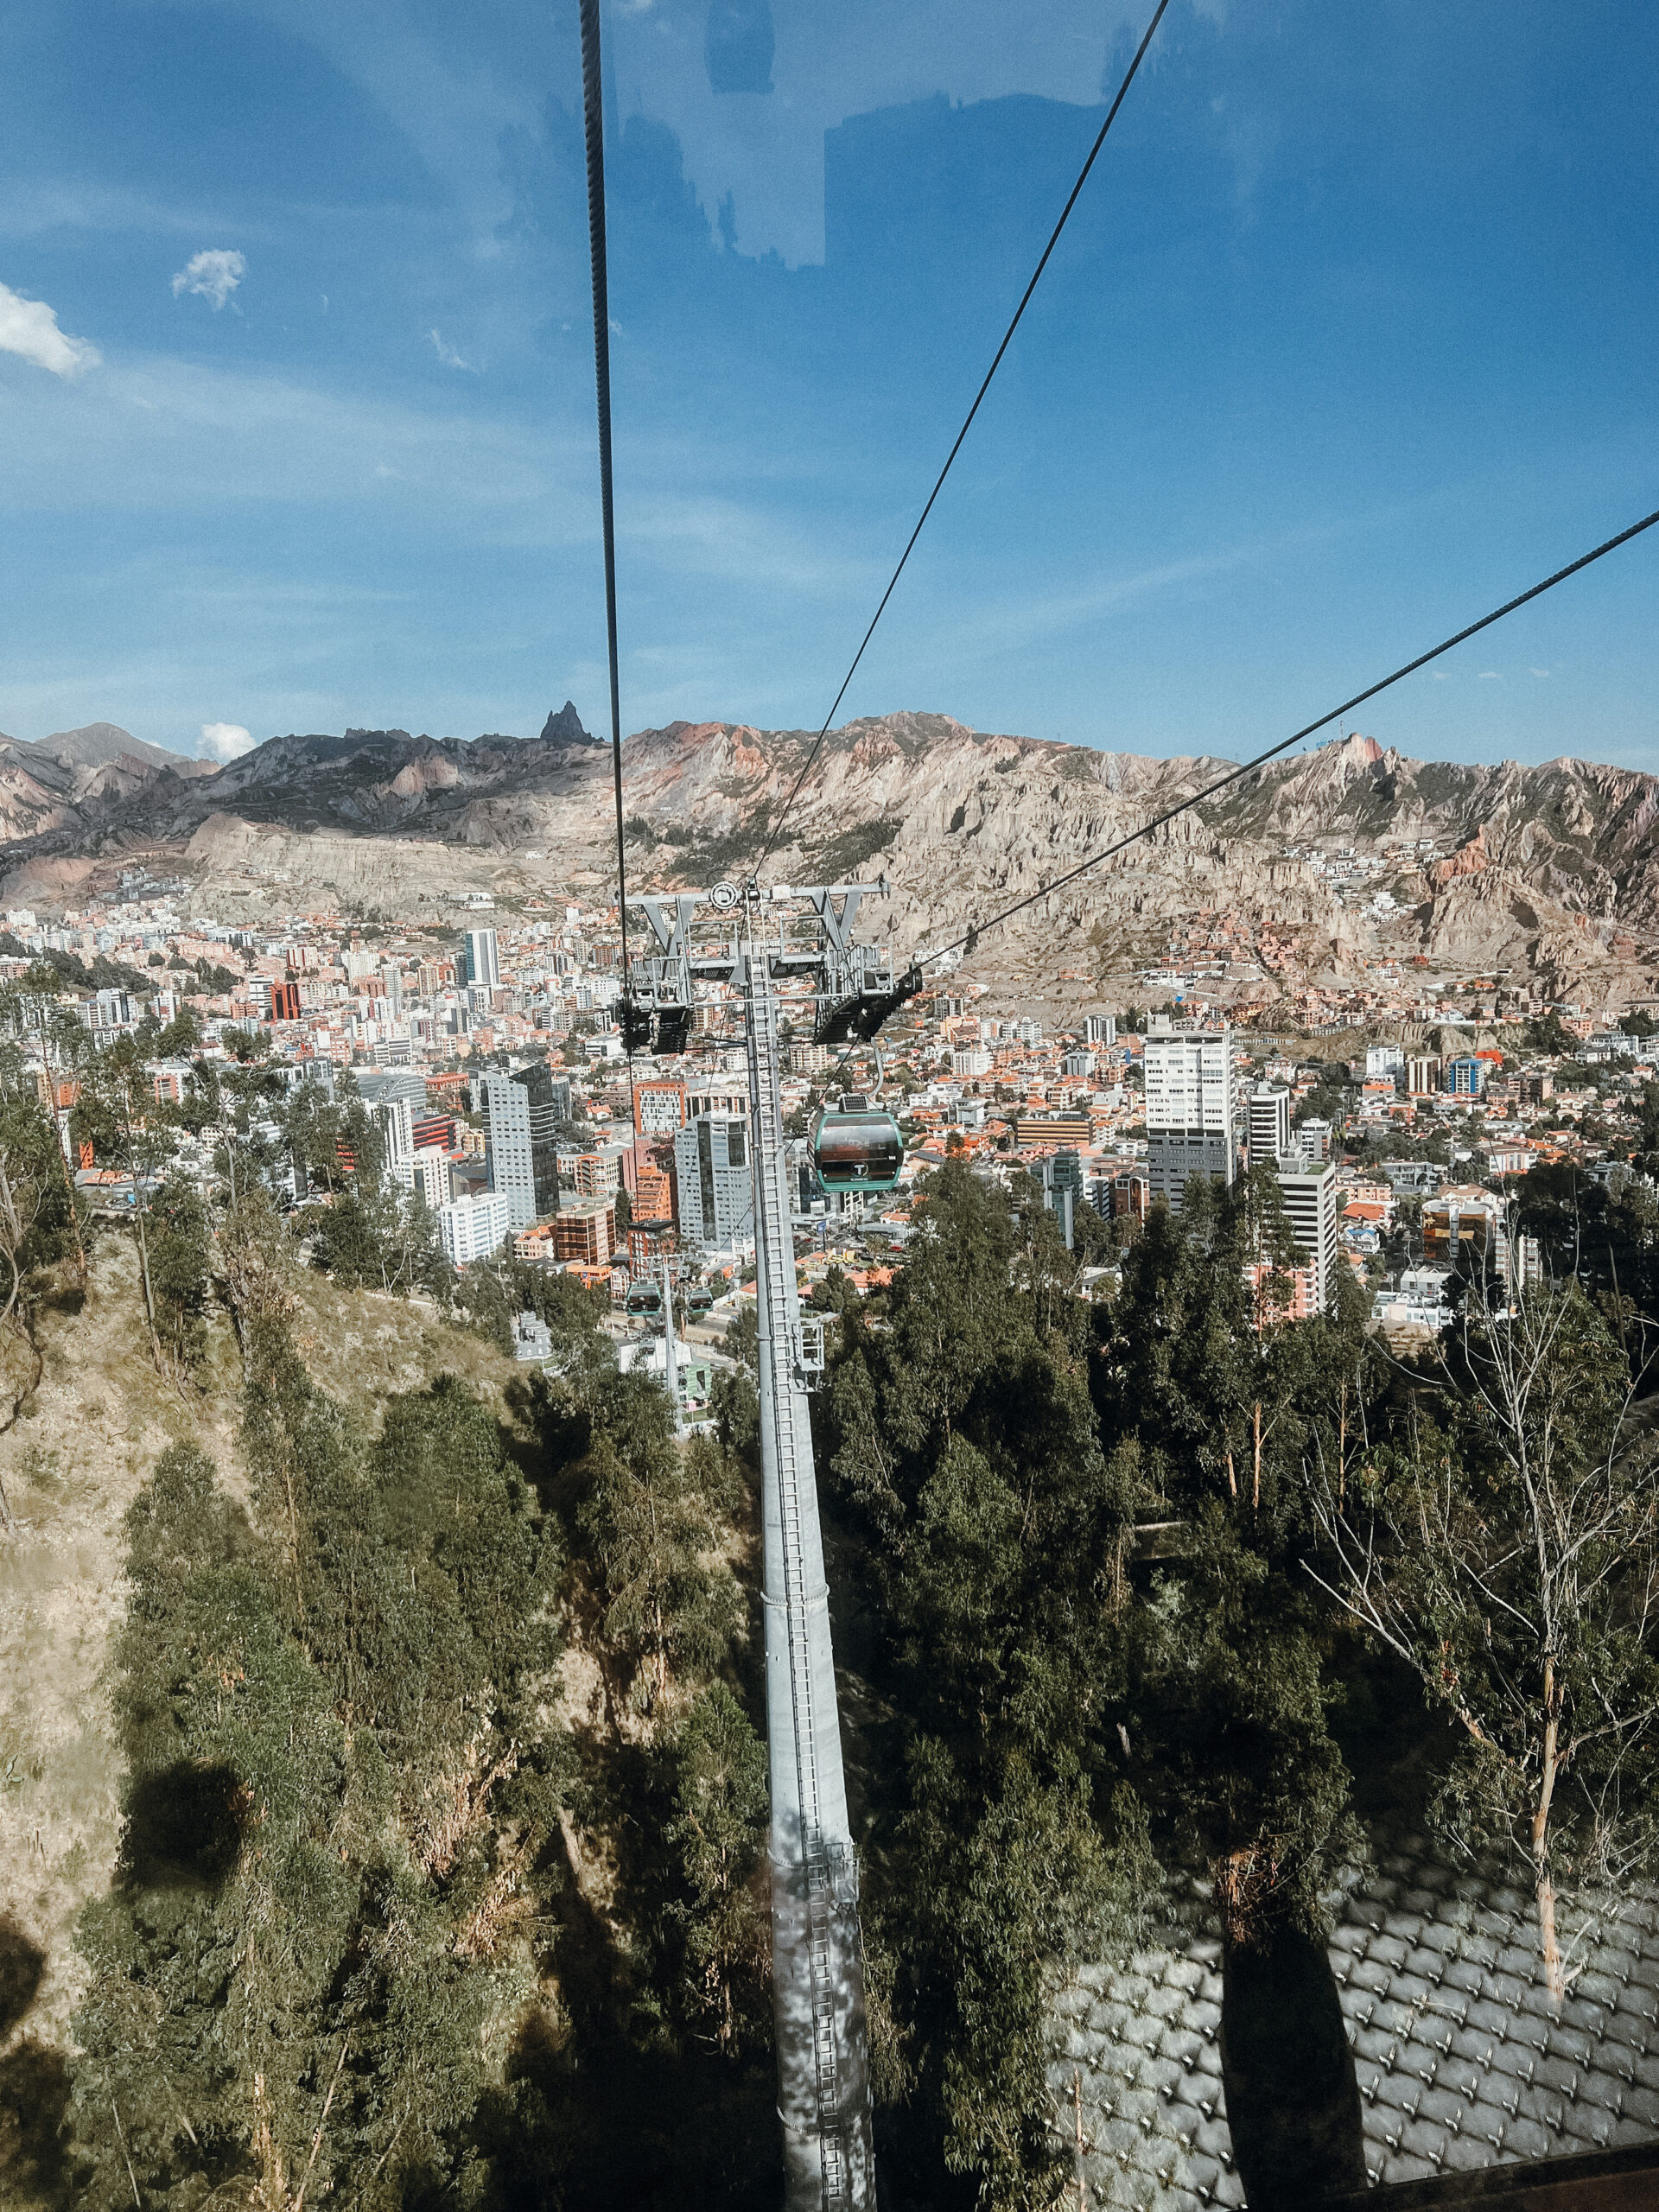 La Paz itinerary